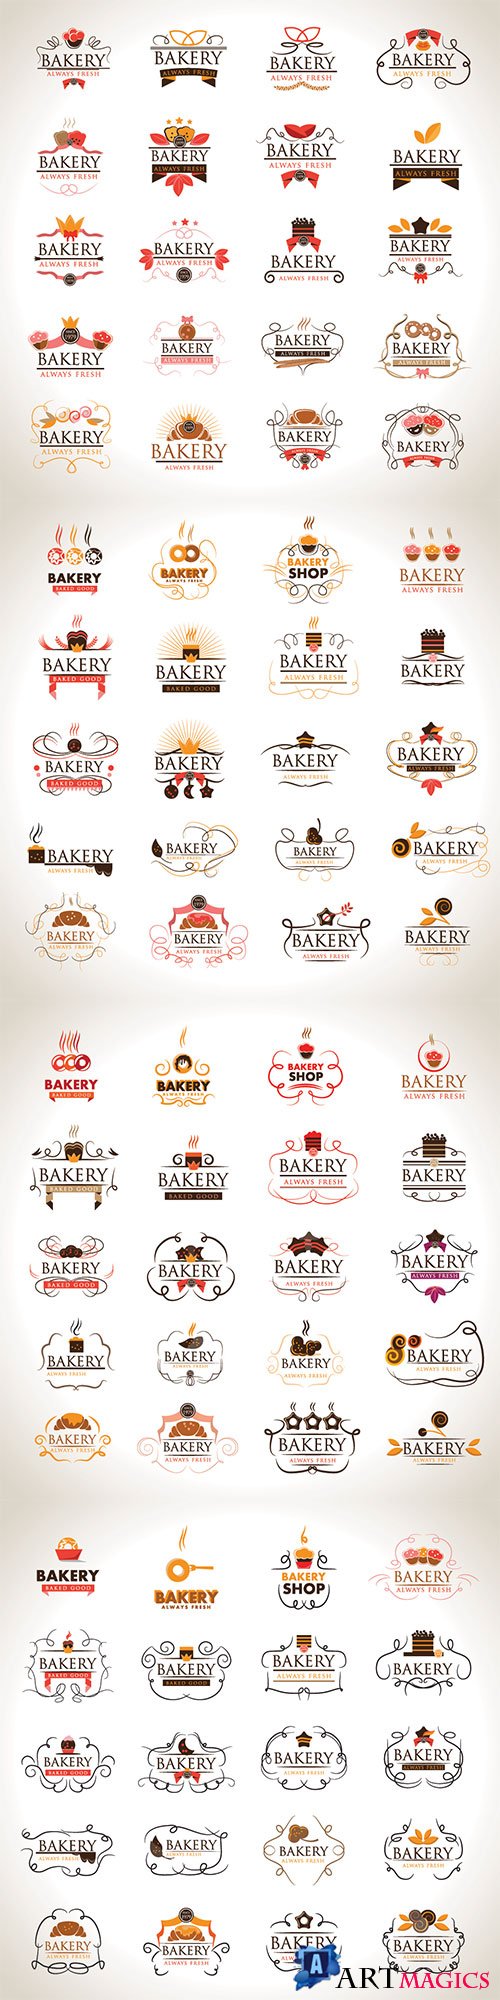 Bakery Icons Set